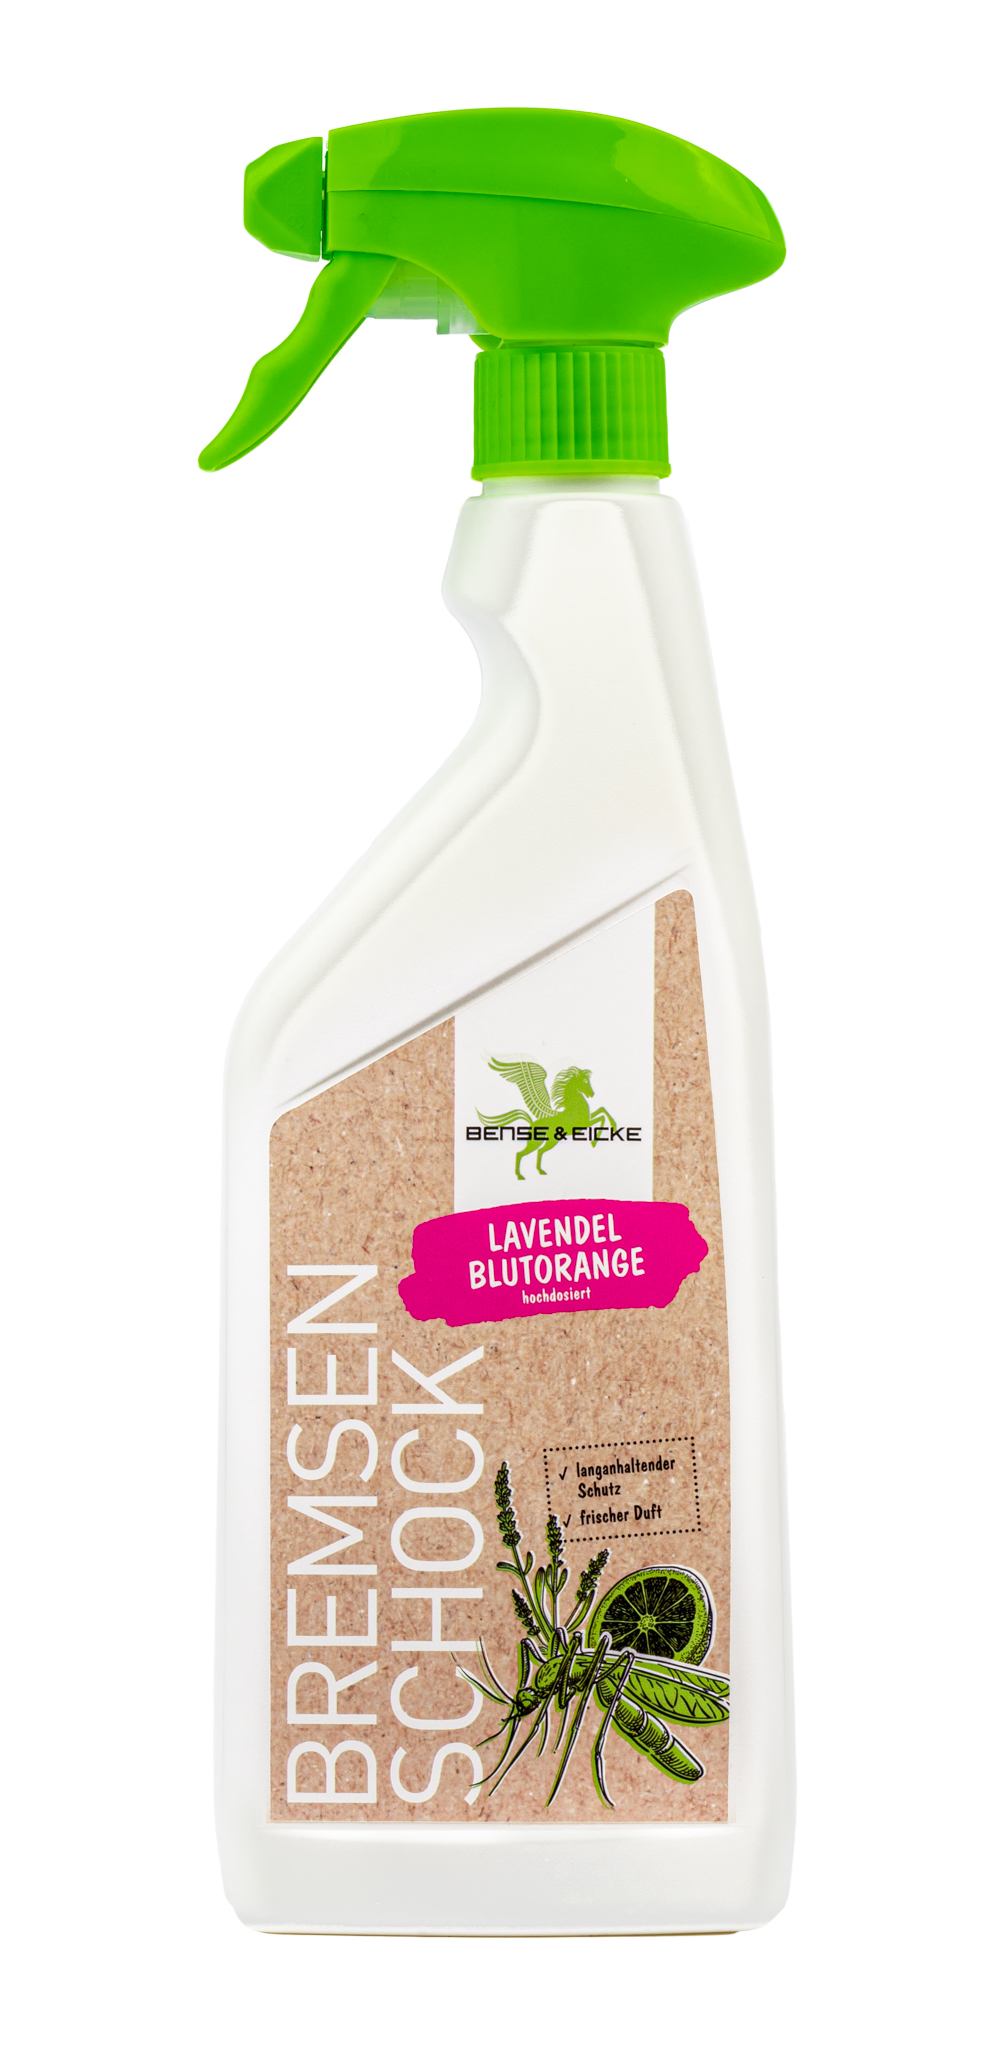 Bense & Eicke | BremsenSchock Lavendel Blutorange - Insektenschutz mit frischem Duft und 20,6% Icaridin - 500 ml